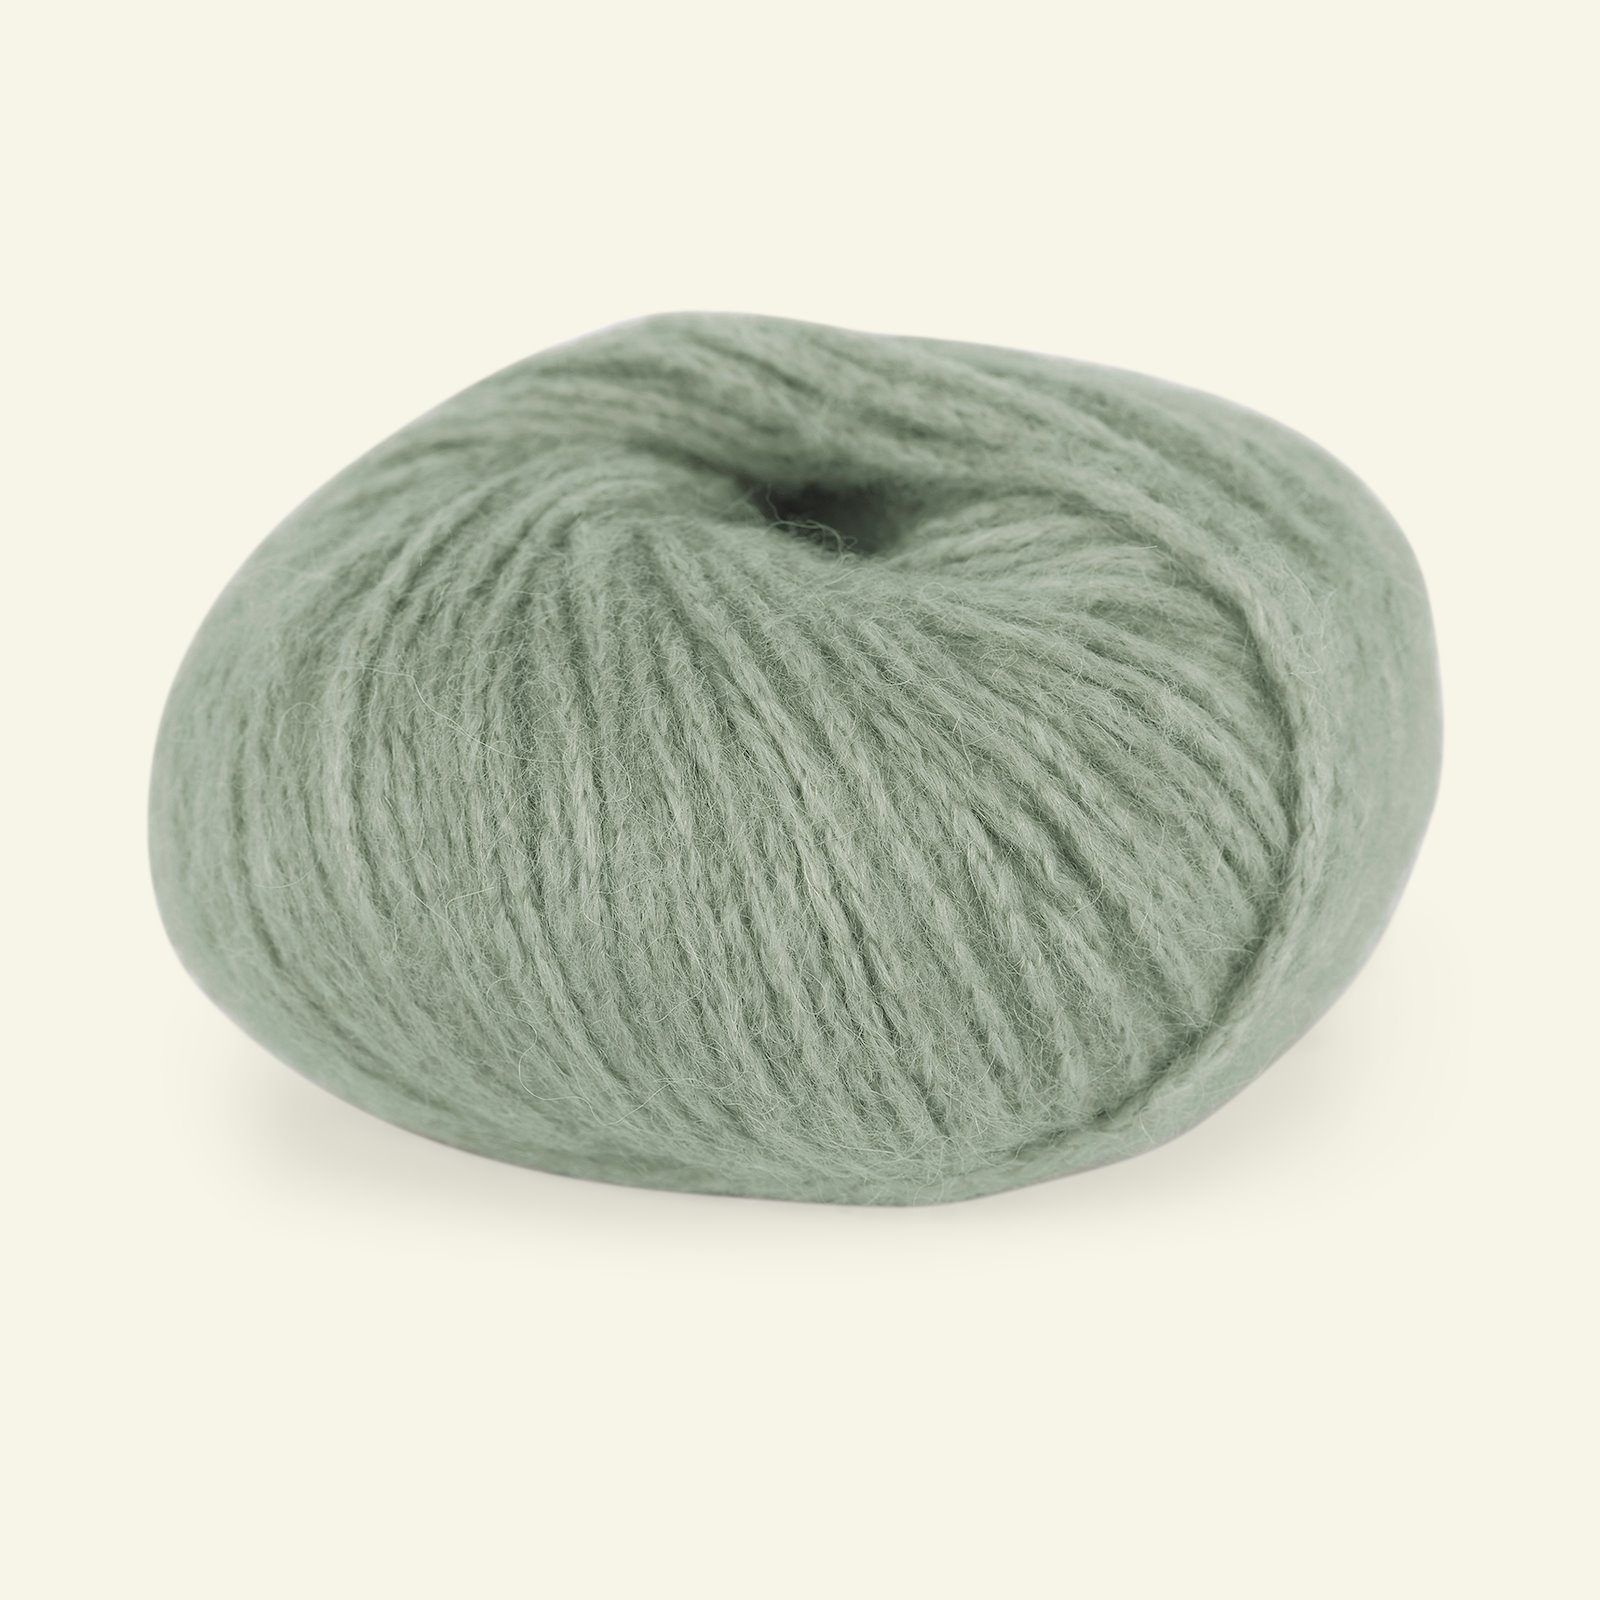 Du Store Alpakka, alpaca mixed yarn "Pus", dusty jade green (4040) 90000729_pack_b